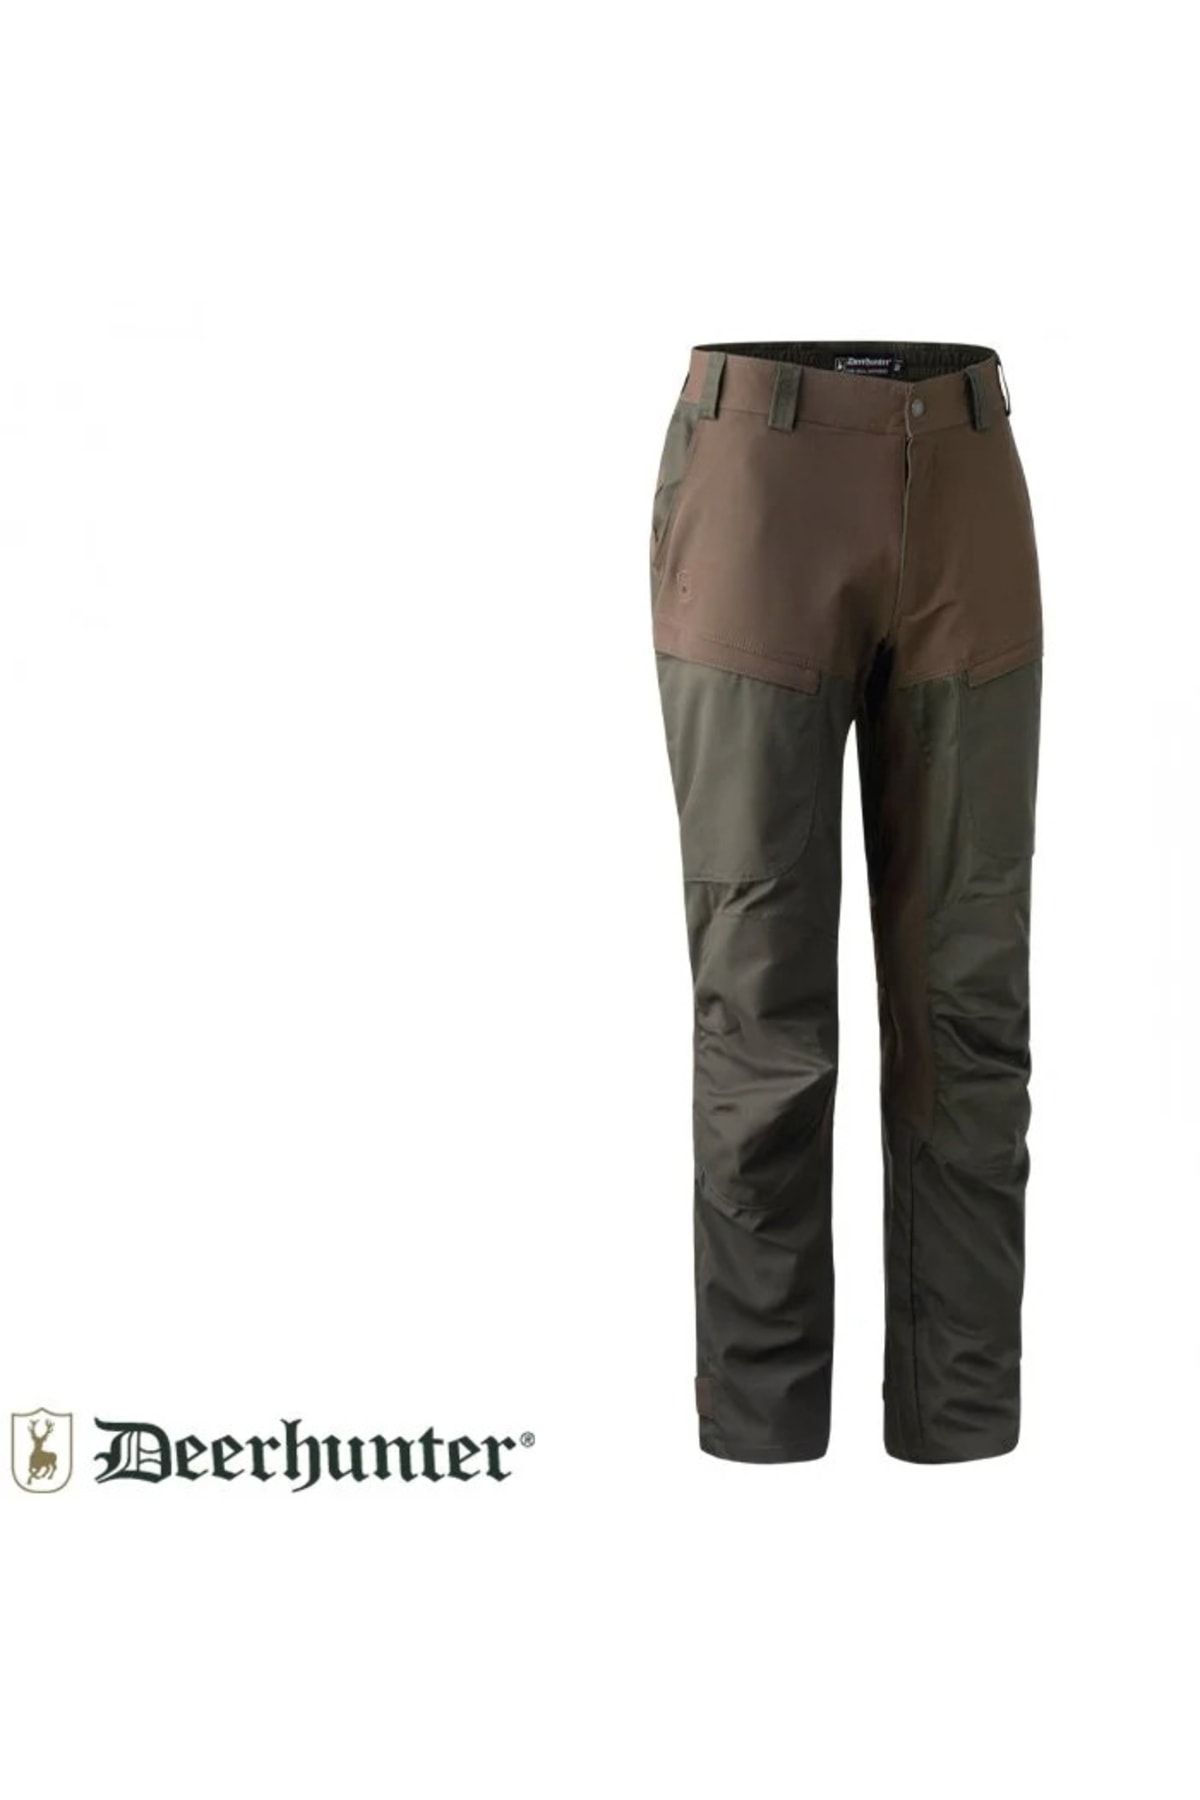 Deerhunter Strike Su Geçirmez K.yeşil Pantolon 50